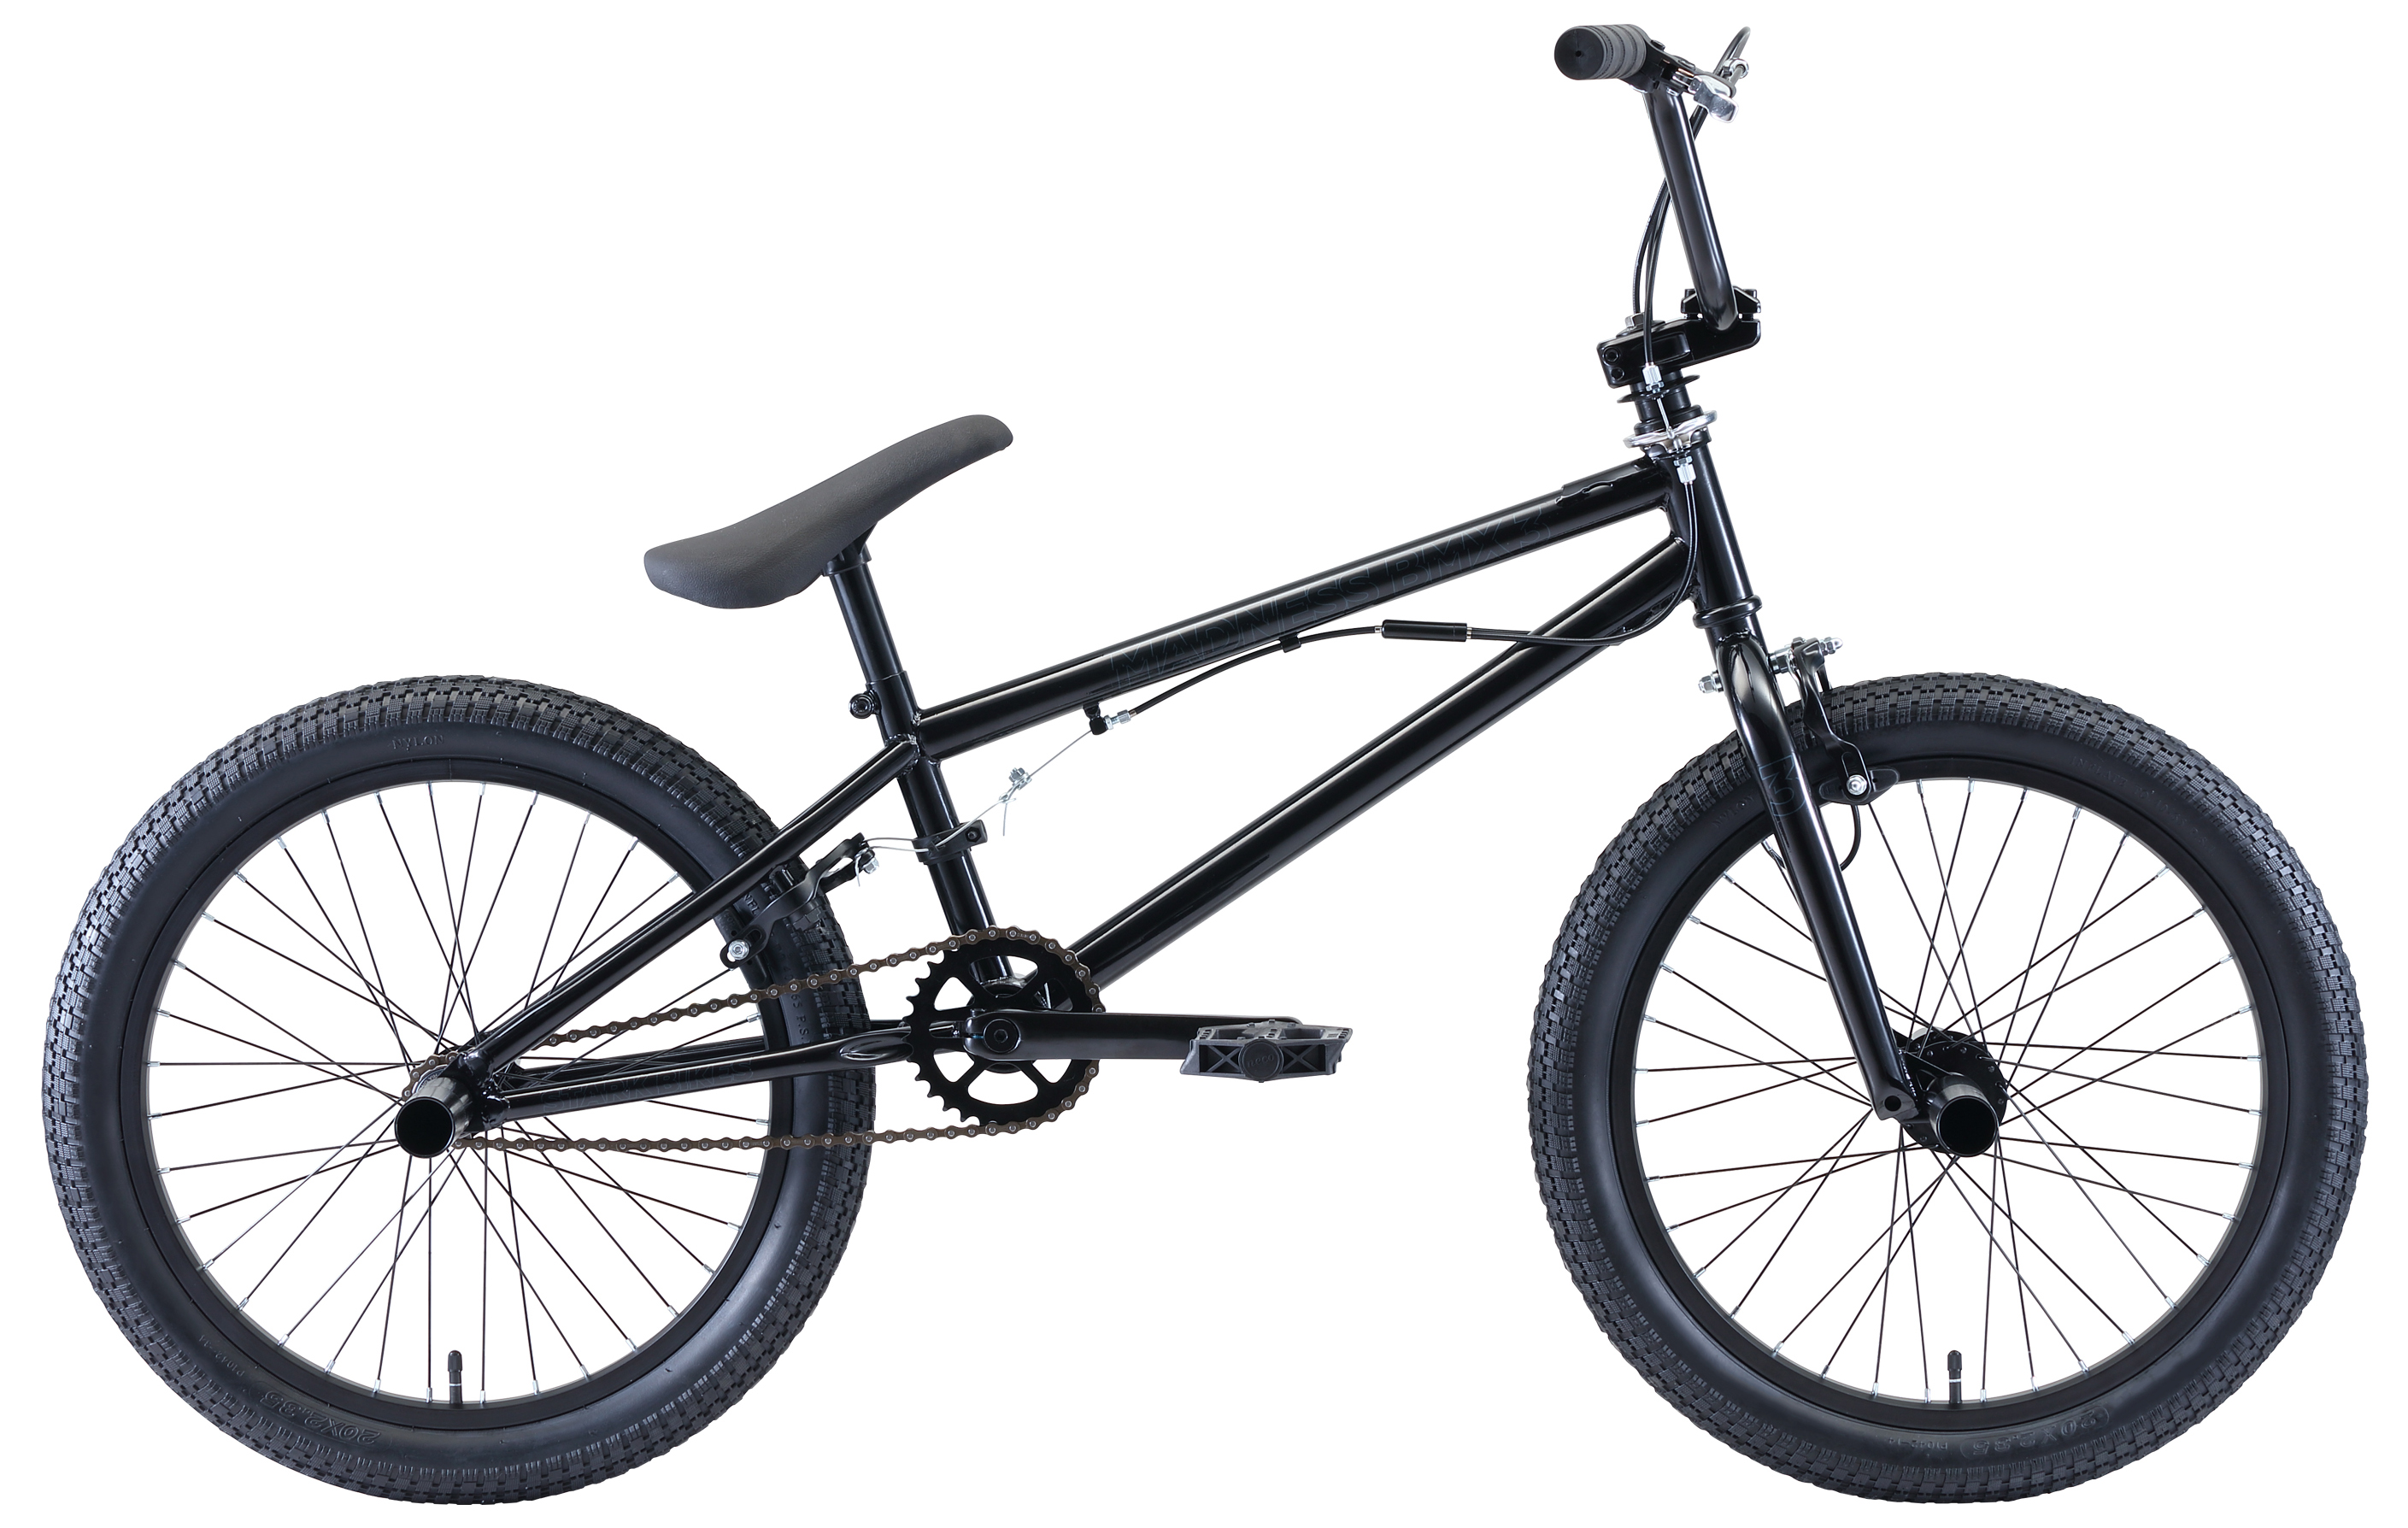  Отзывы о Велосипеде BMX Stark Madness BMX 3 2020